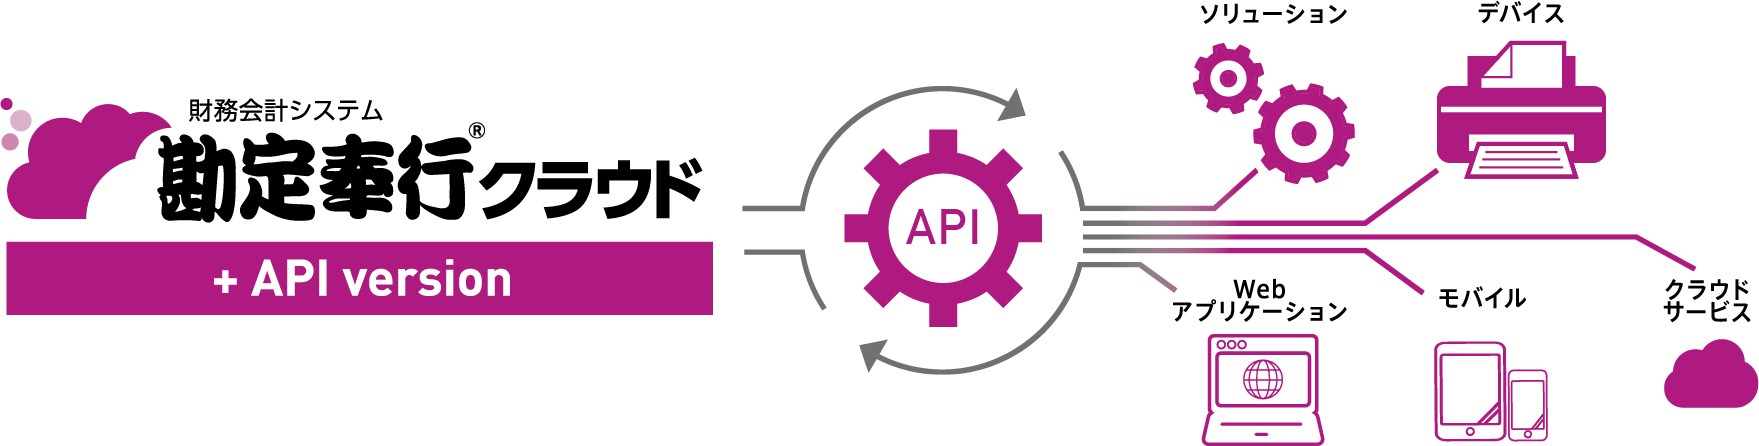 勘定奉行 クラウドがAPI連携により、様々なソリューション、デバイス、Webアプリケーション、モバイル、クラウドサービスとつながるイメージ